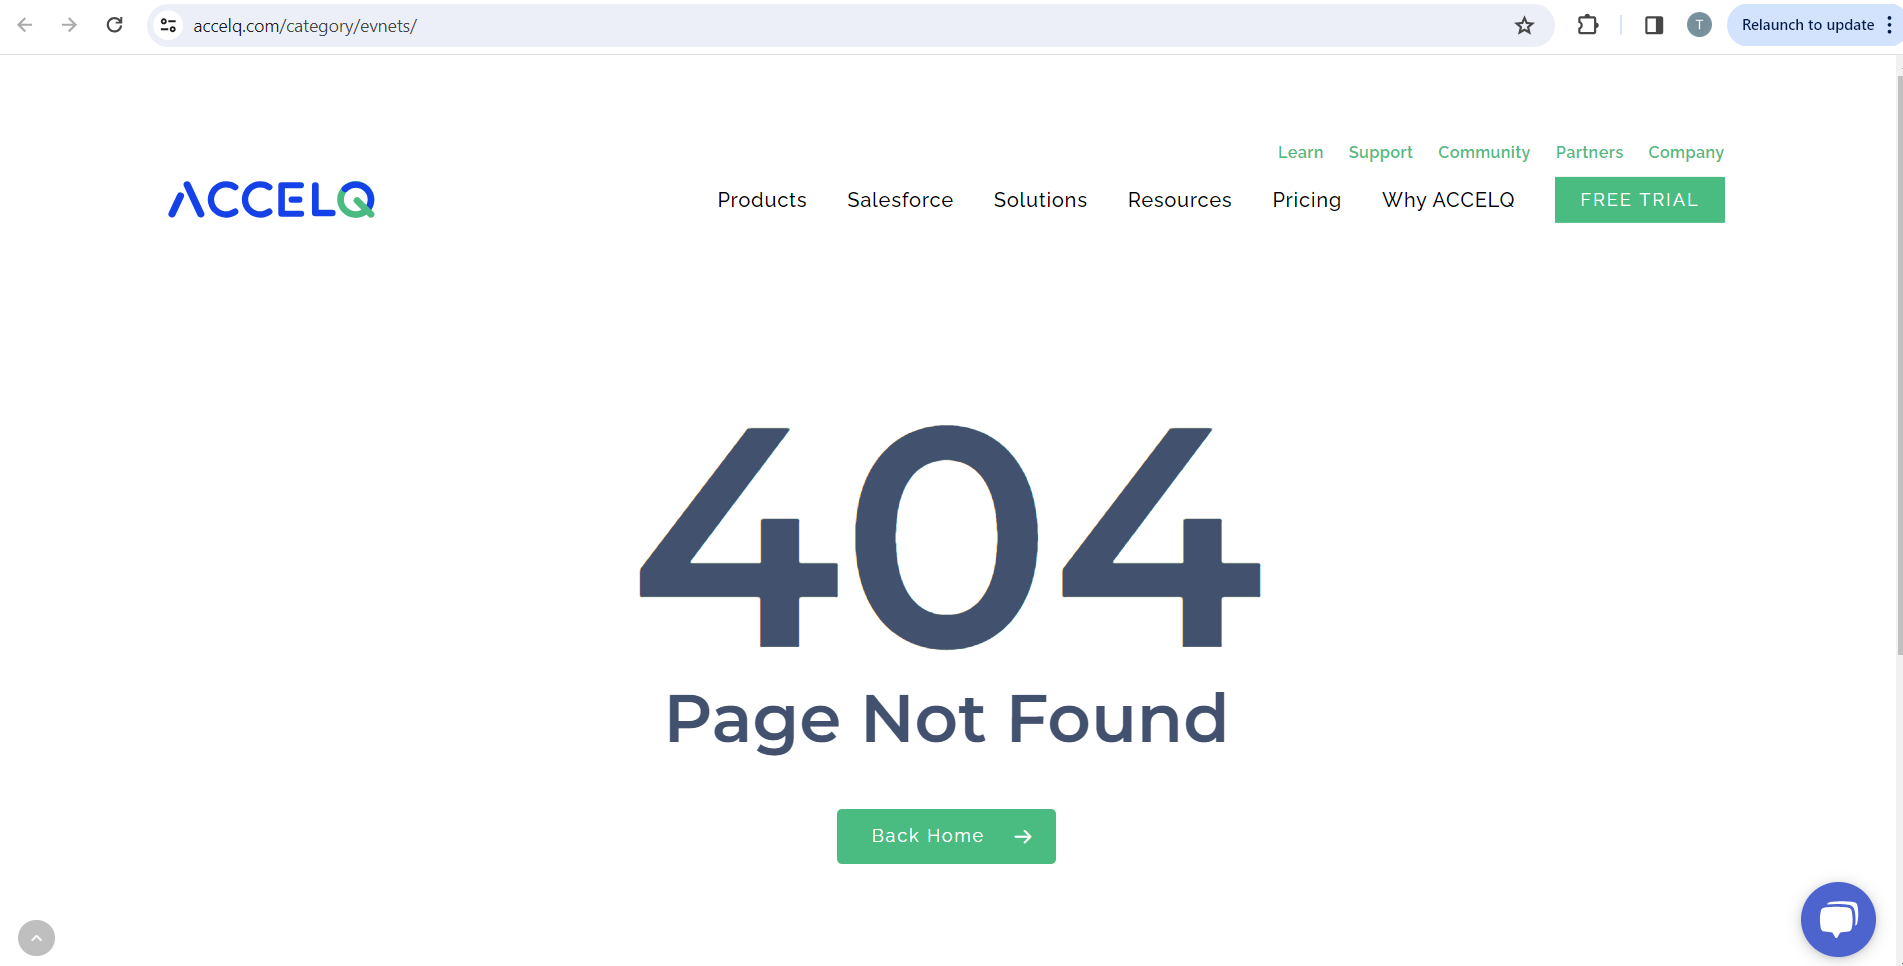 Ein 404-Fehler wird angezeigt, nachdem Sie auf den Link News geklickt haben